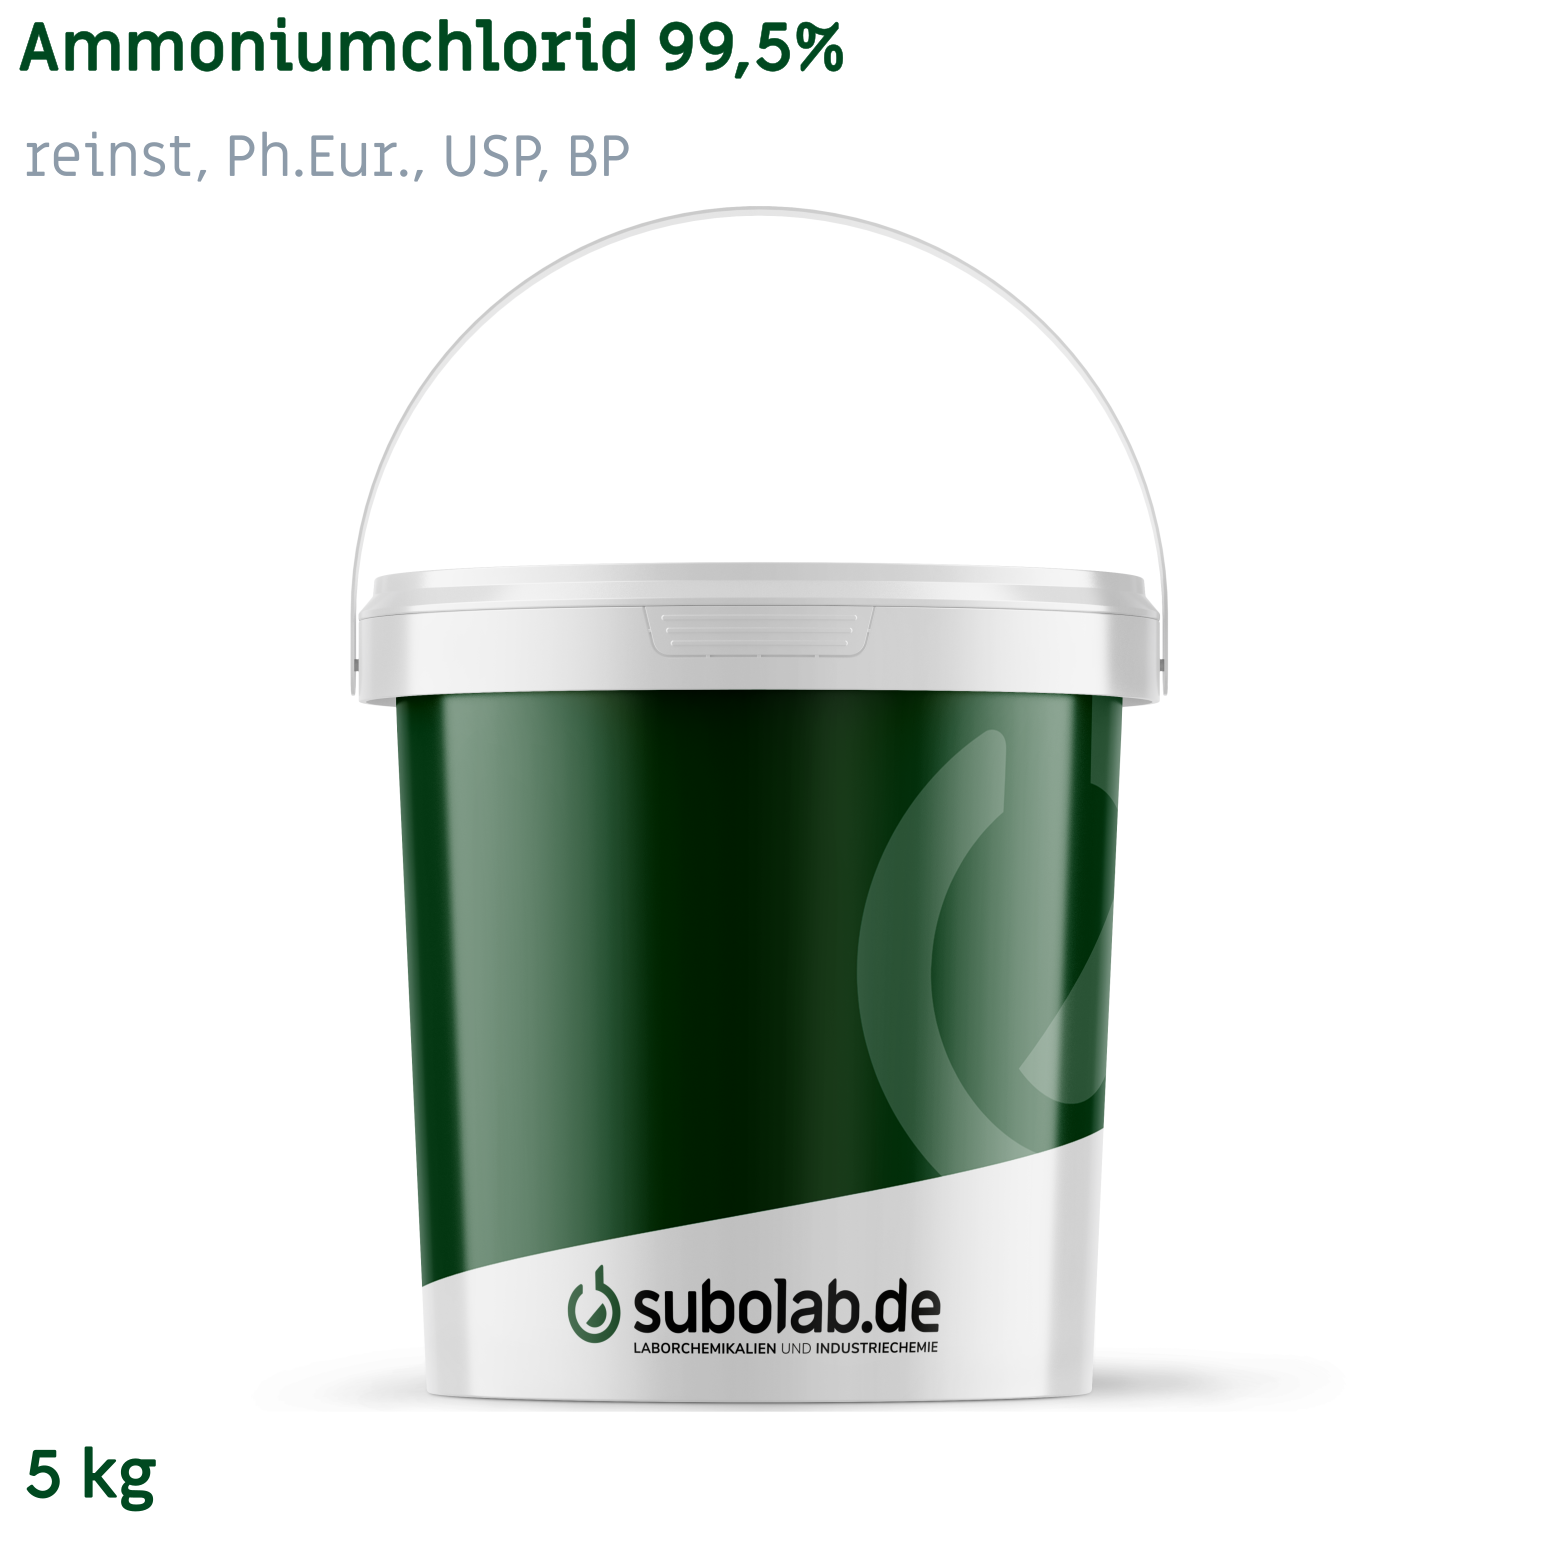 Bild von Ammoniumchlorid 99,5% reinst, Ph.Eur., USP, BP (5 kg)